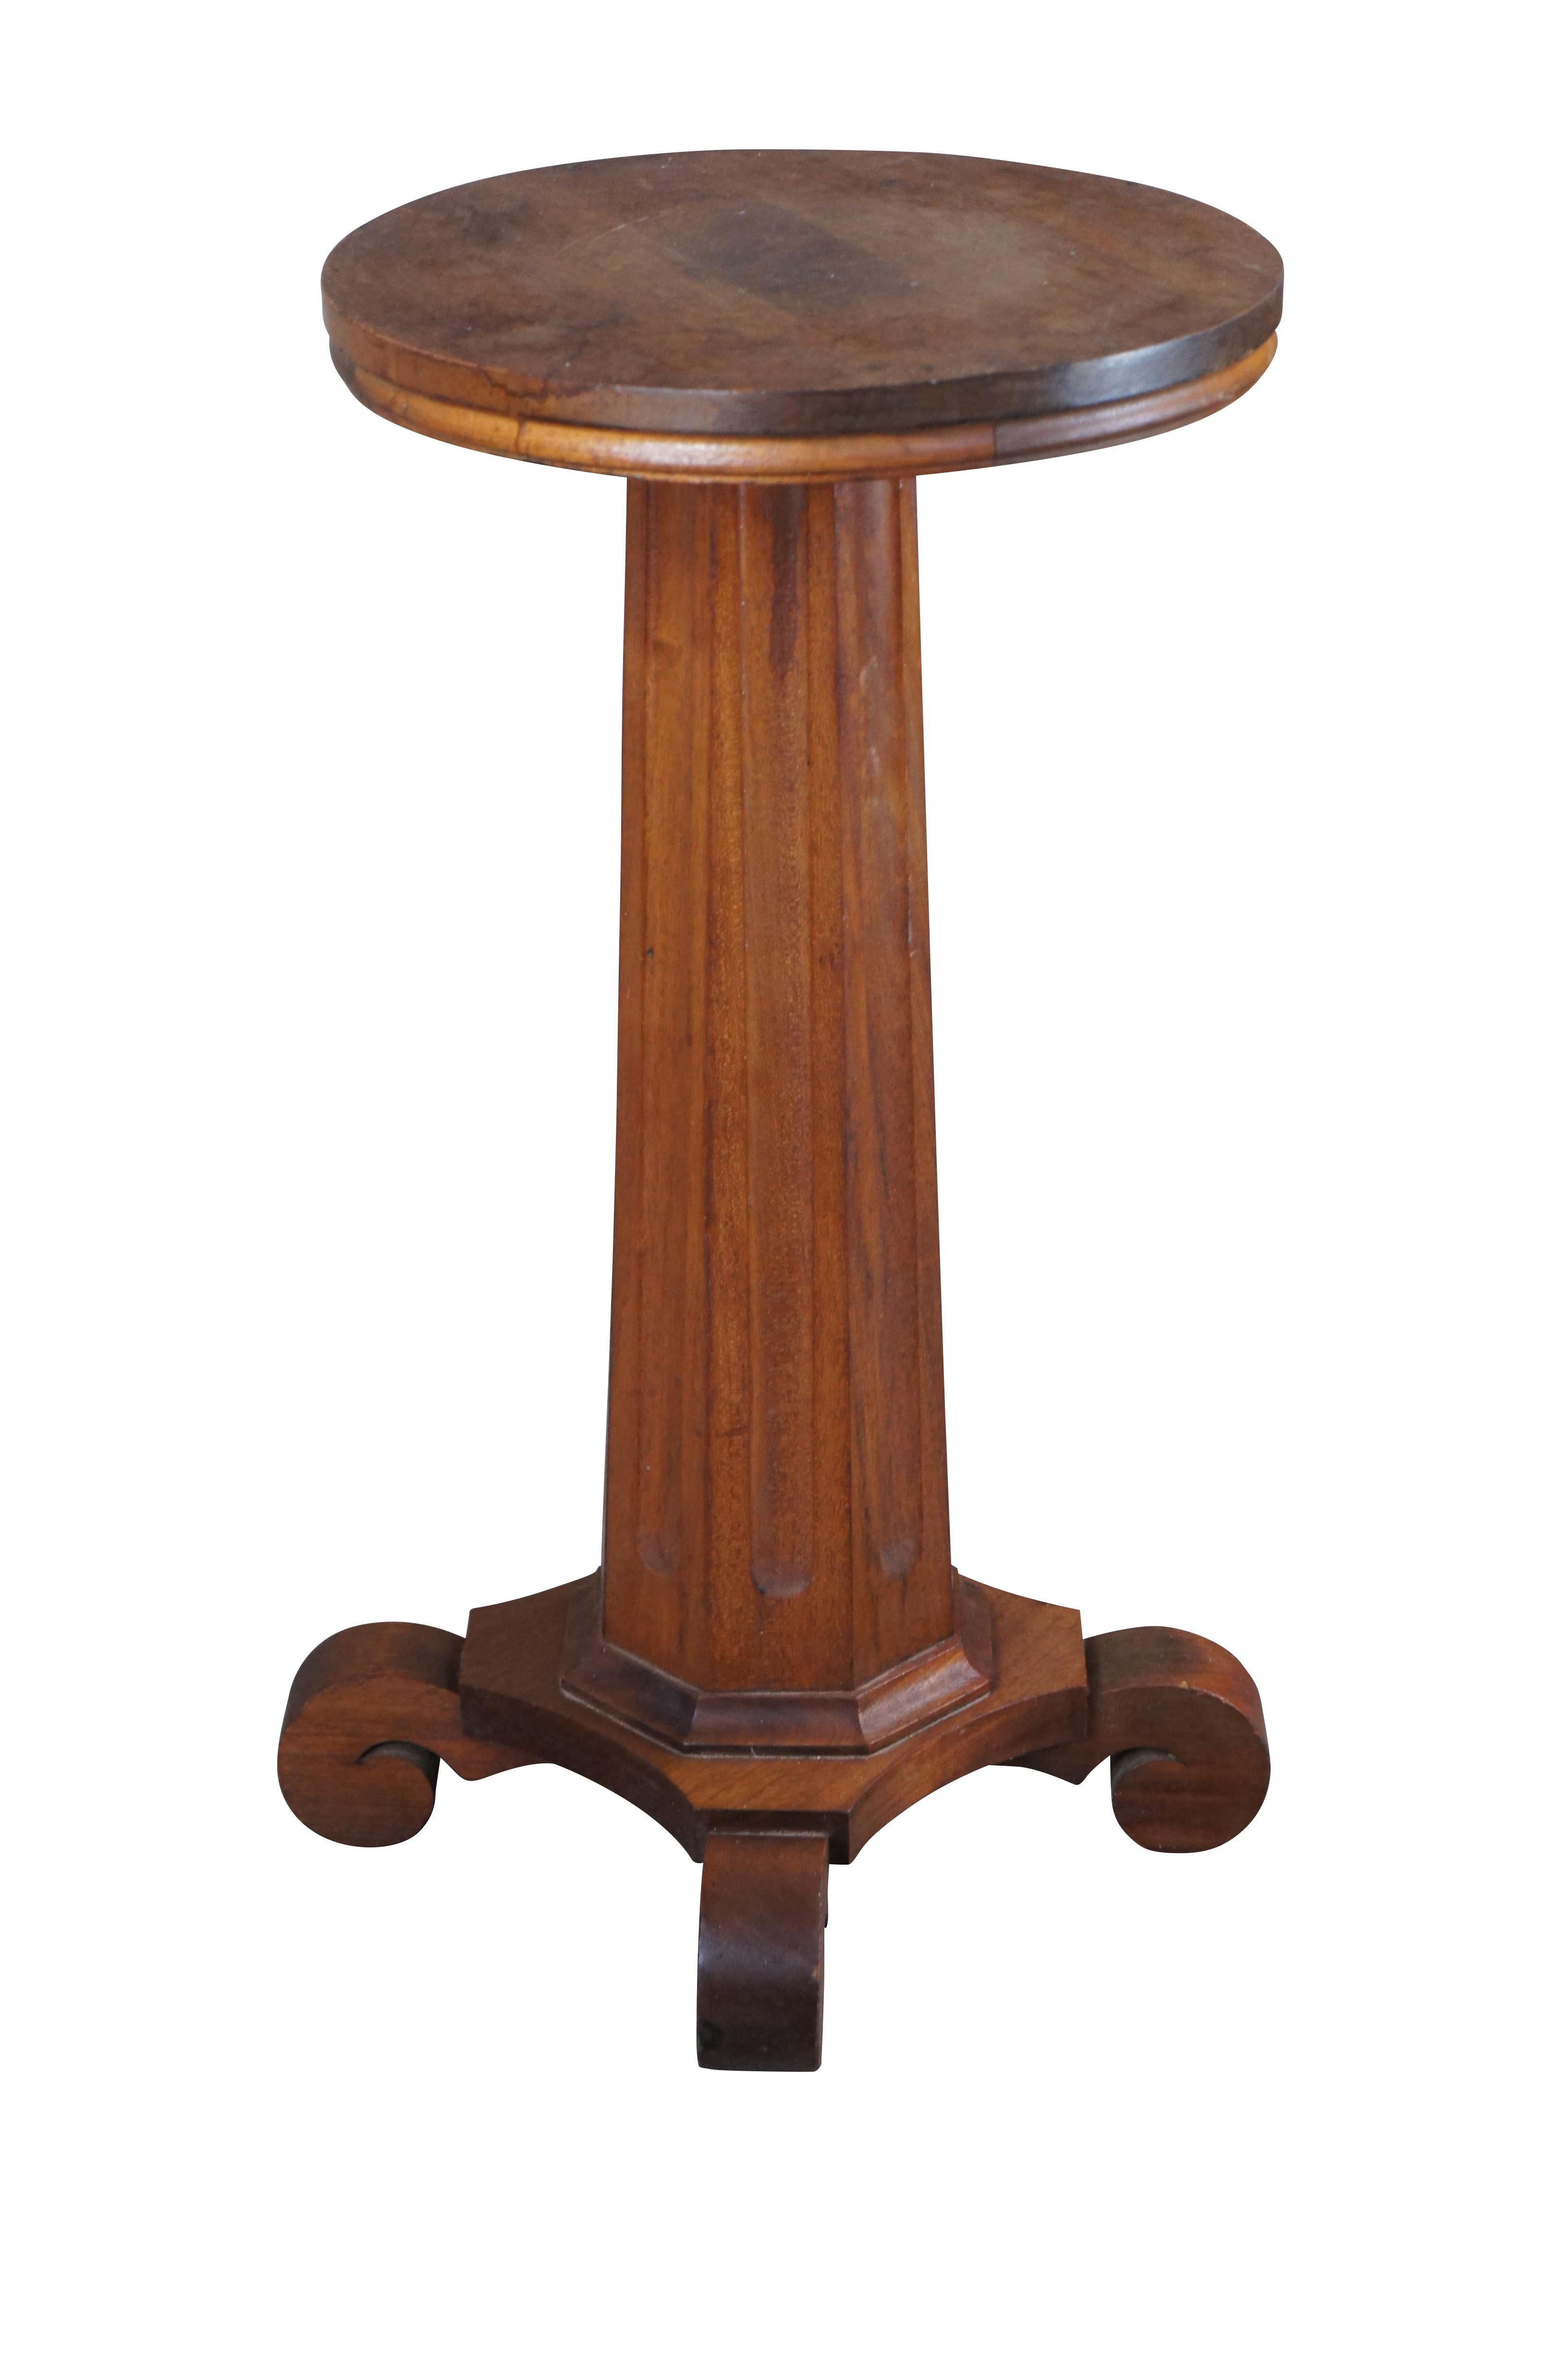 Eine antike 19. Jahrhundert American Classical / Empire Sockel Tisch oder Skulptur / Kerzenständer. Gefertigt aus massivem Mahagoniholz, mit runder Platte über einer kannelierten achteckigen Säule, die zu einem C